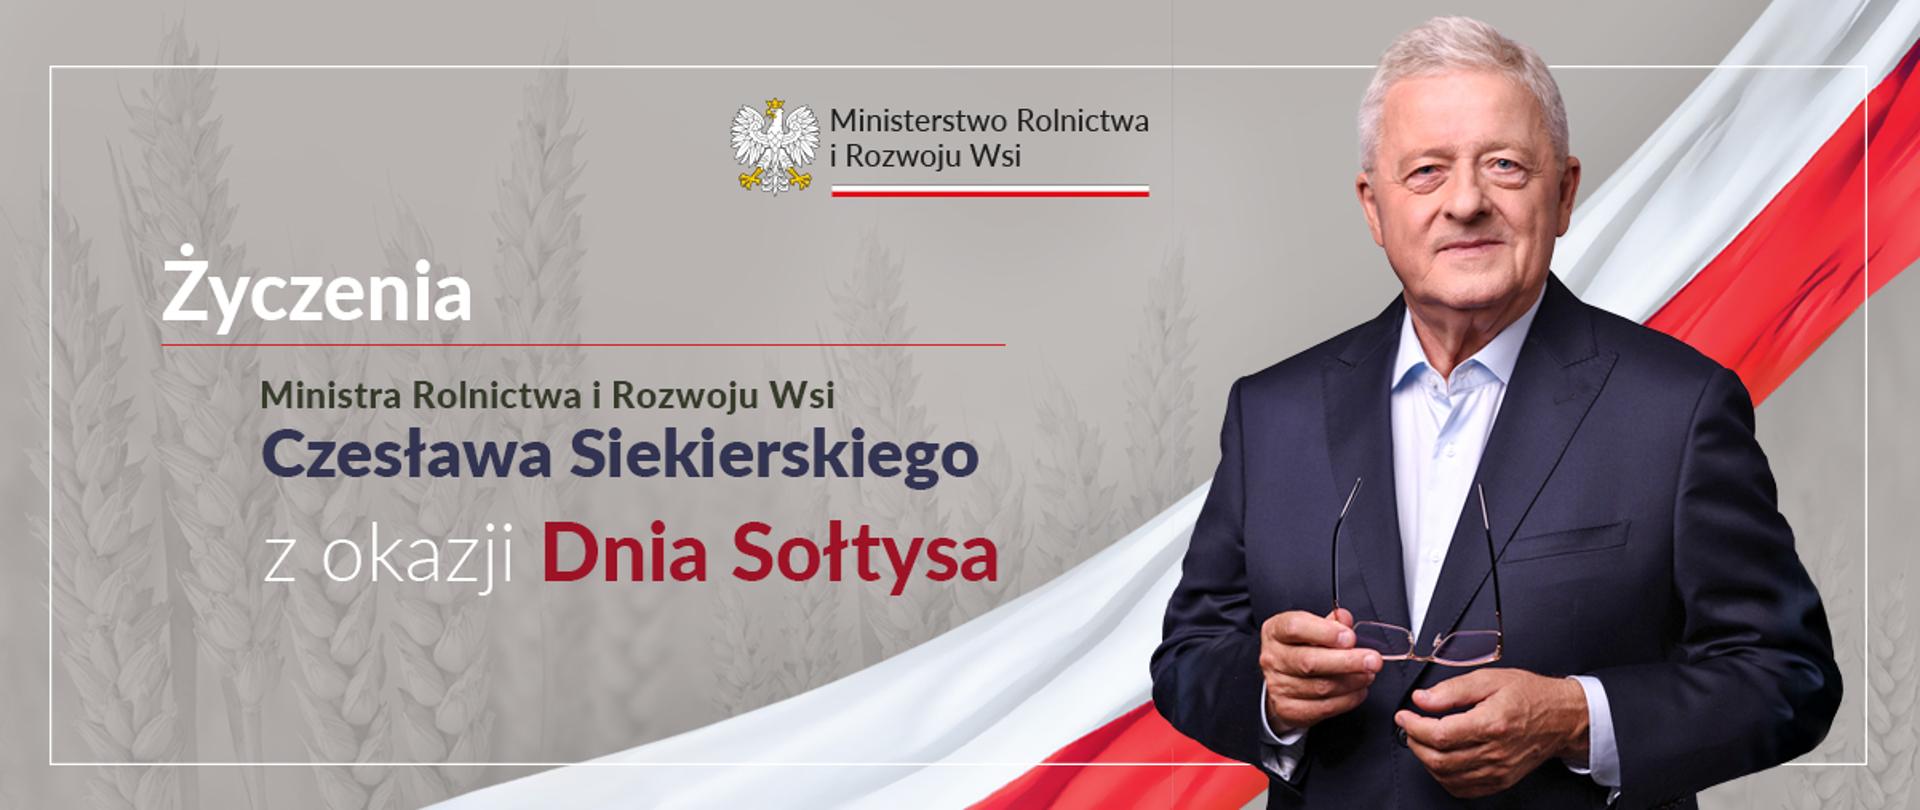 Dzień Sołtysa – życzenia ministra rolnictwa i rozwoju wsi Czesława Siekierskiego 